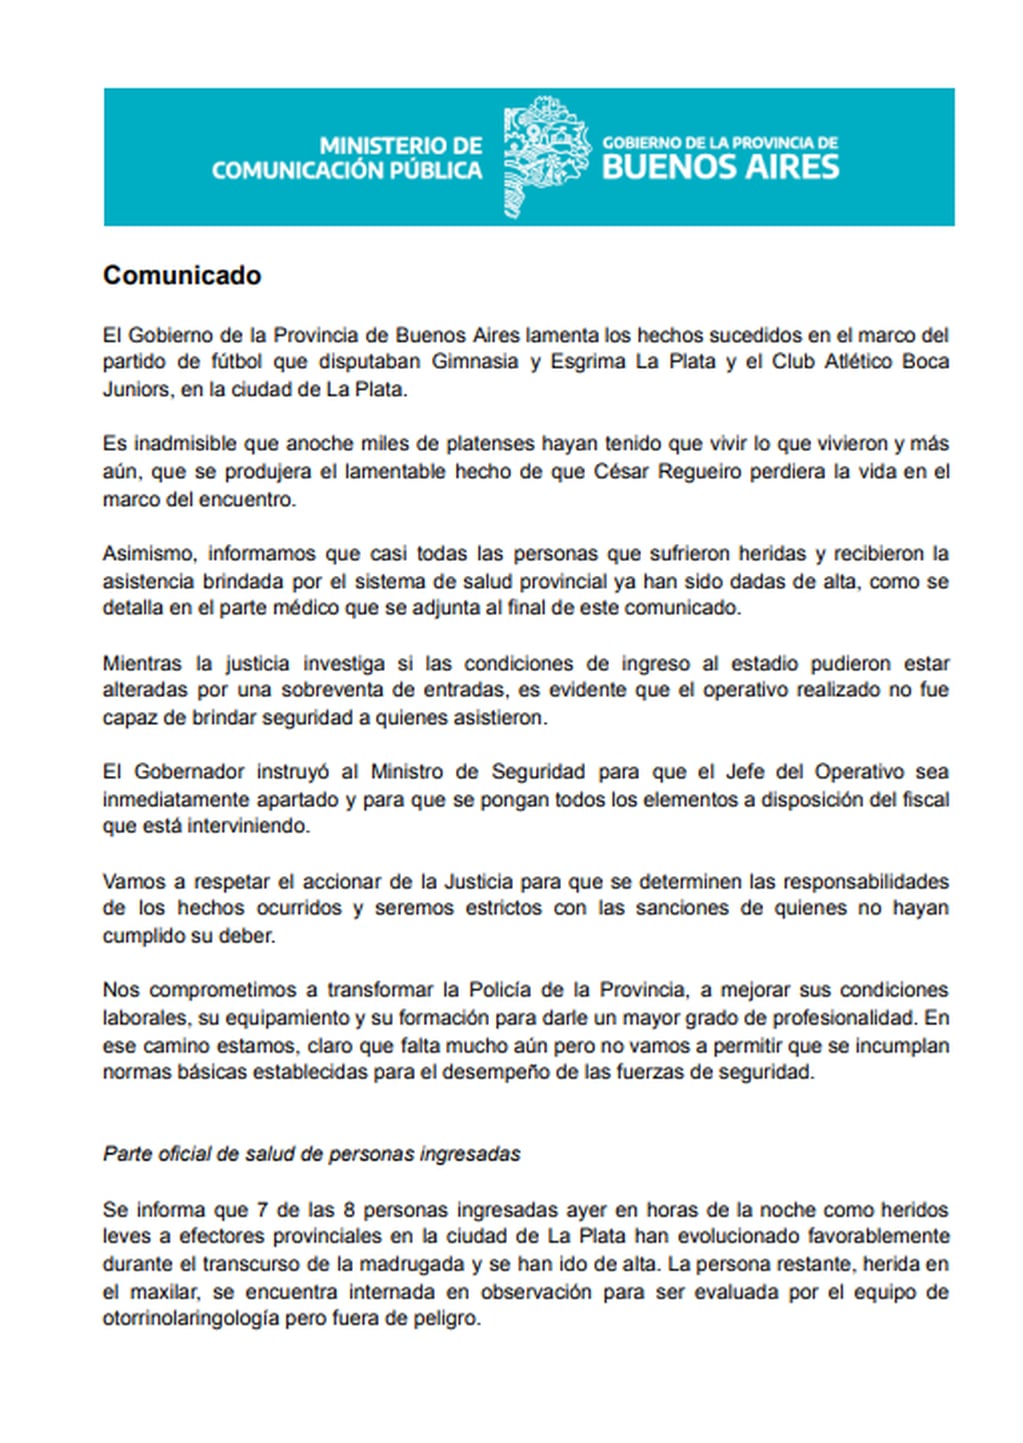 El comunicado del Gobierno Bonaerense tras los incidentes en el partido Ginmasia-Boca.